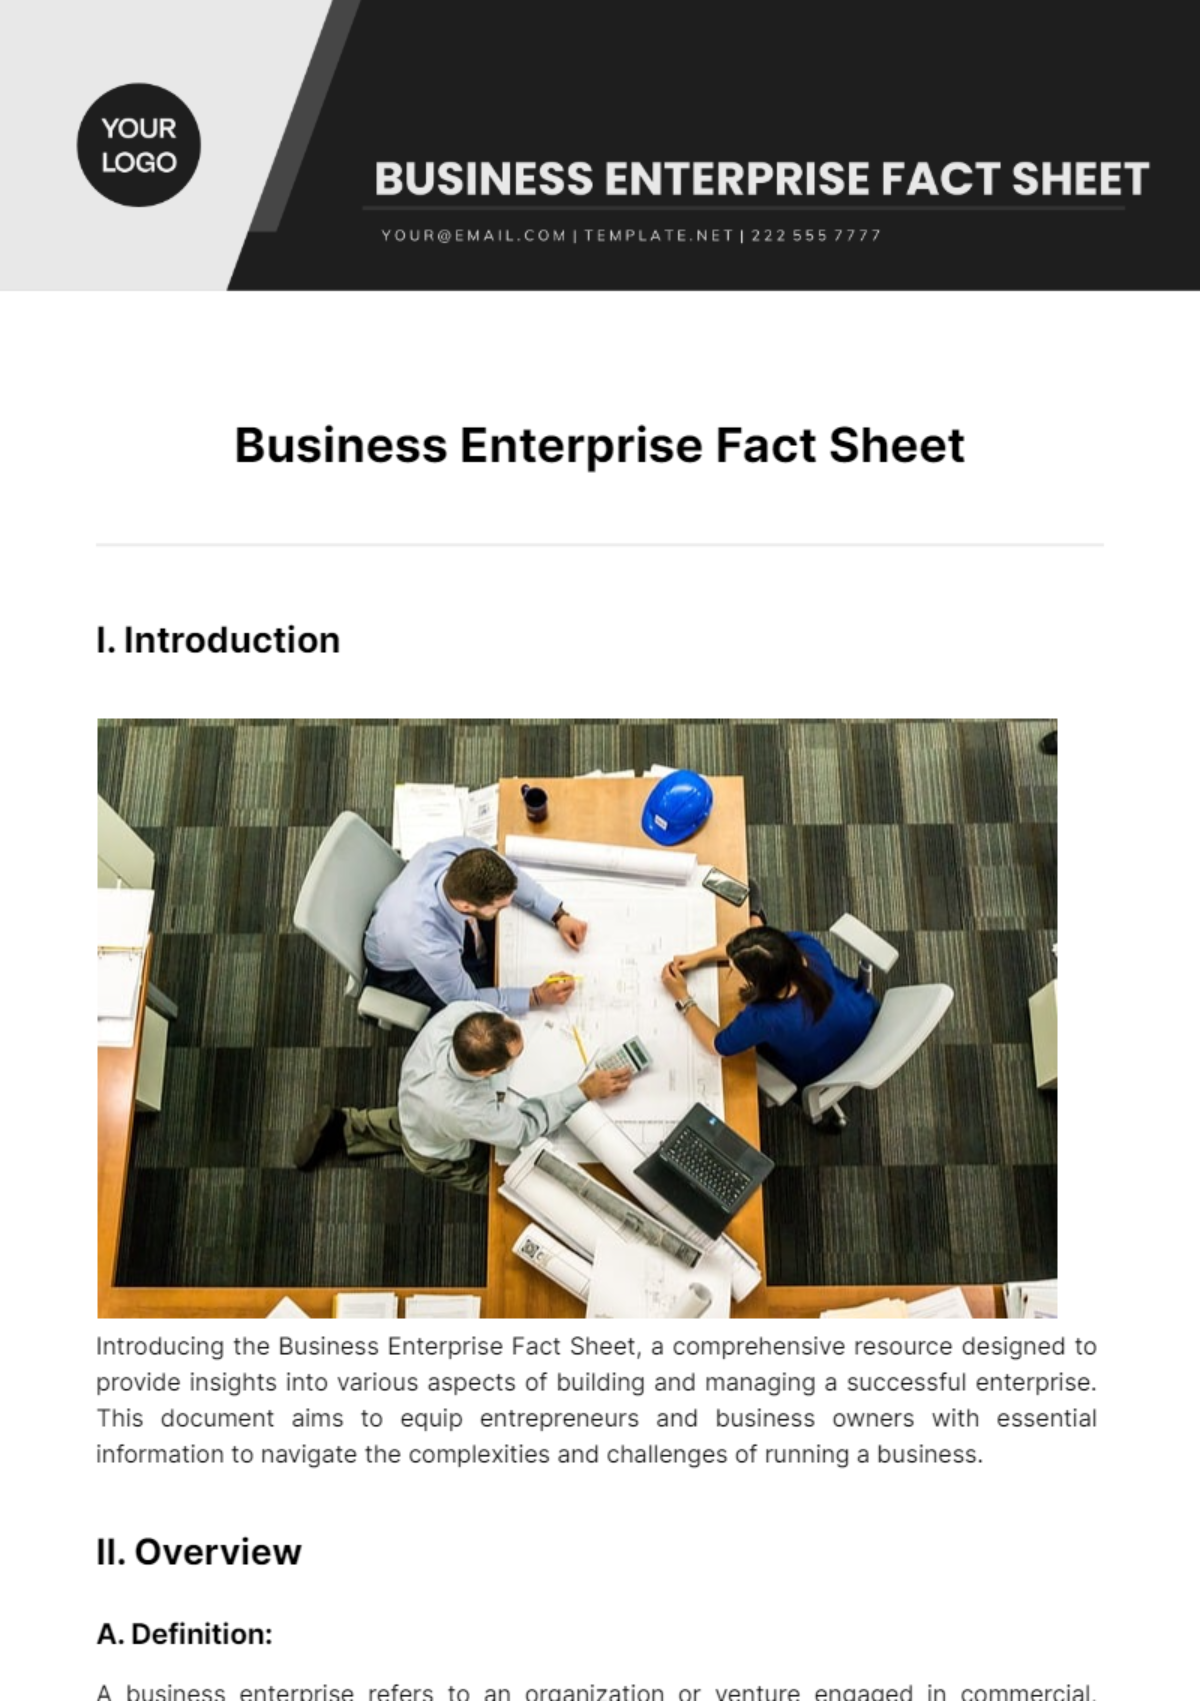 Business Enterprise Fact Sheet Template